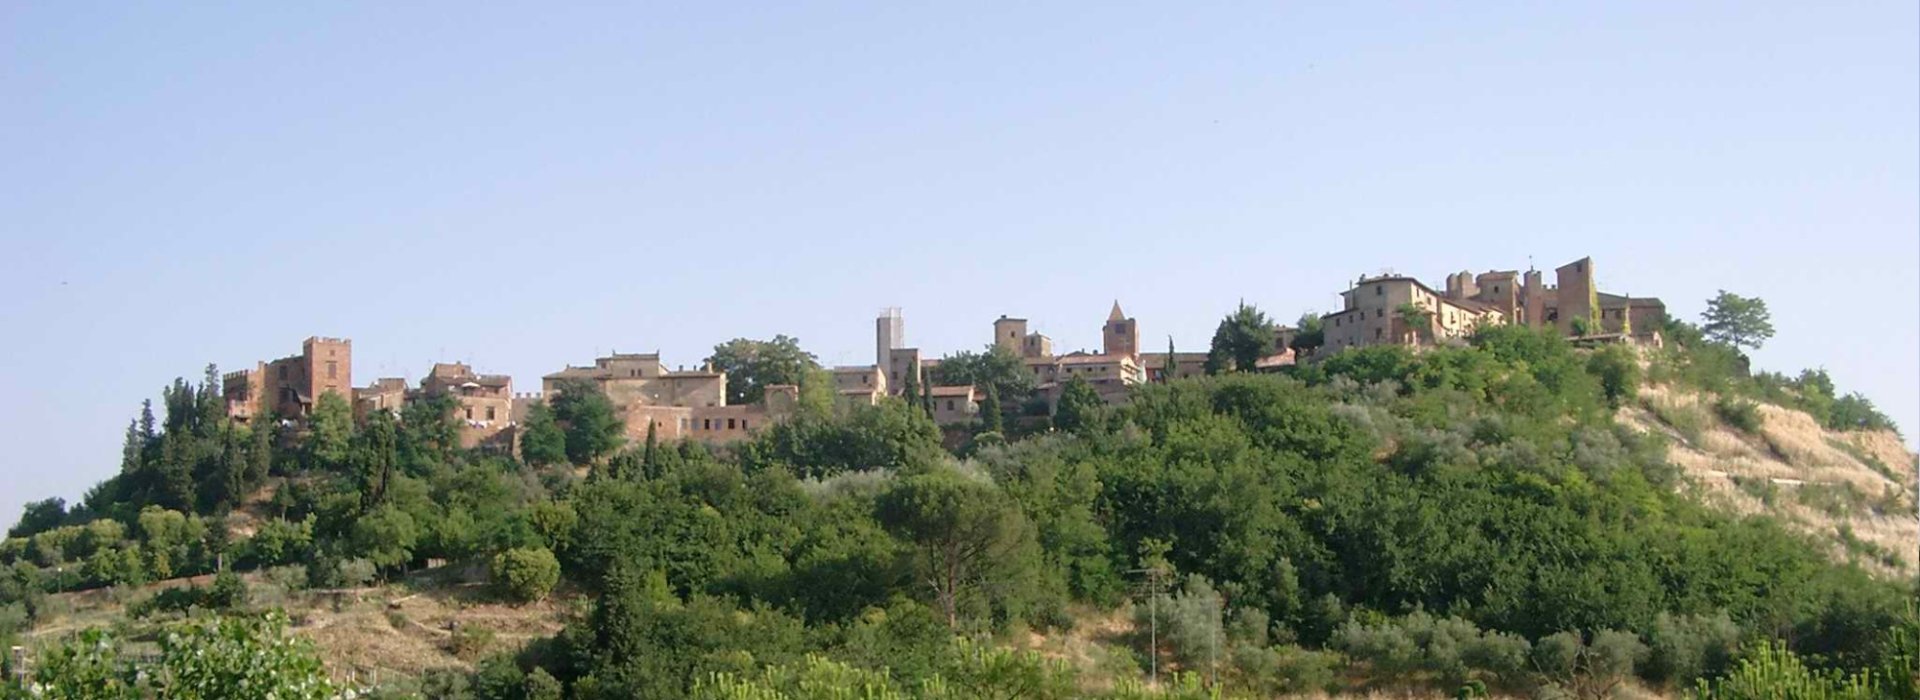 Il borgo medievale di Certaldo Alto dove visiteremo Casa Boccaccio.